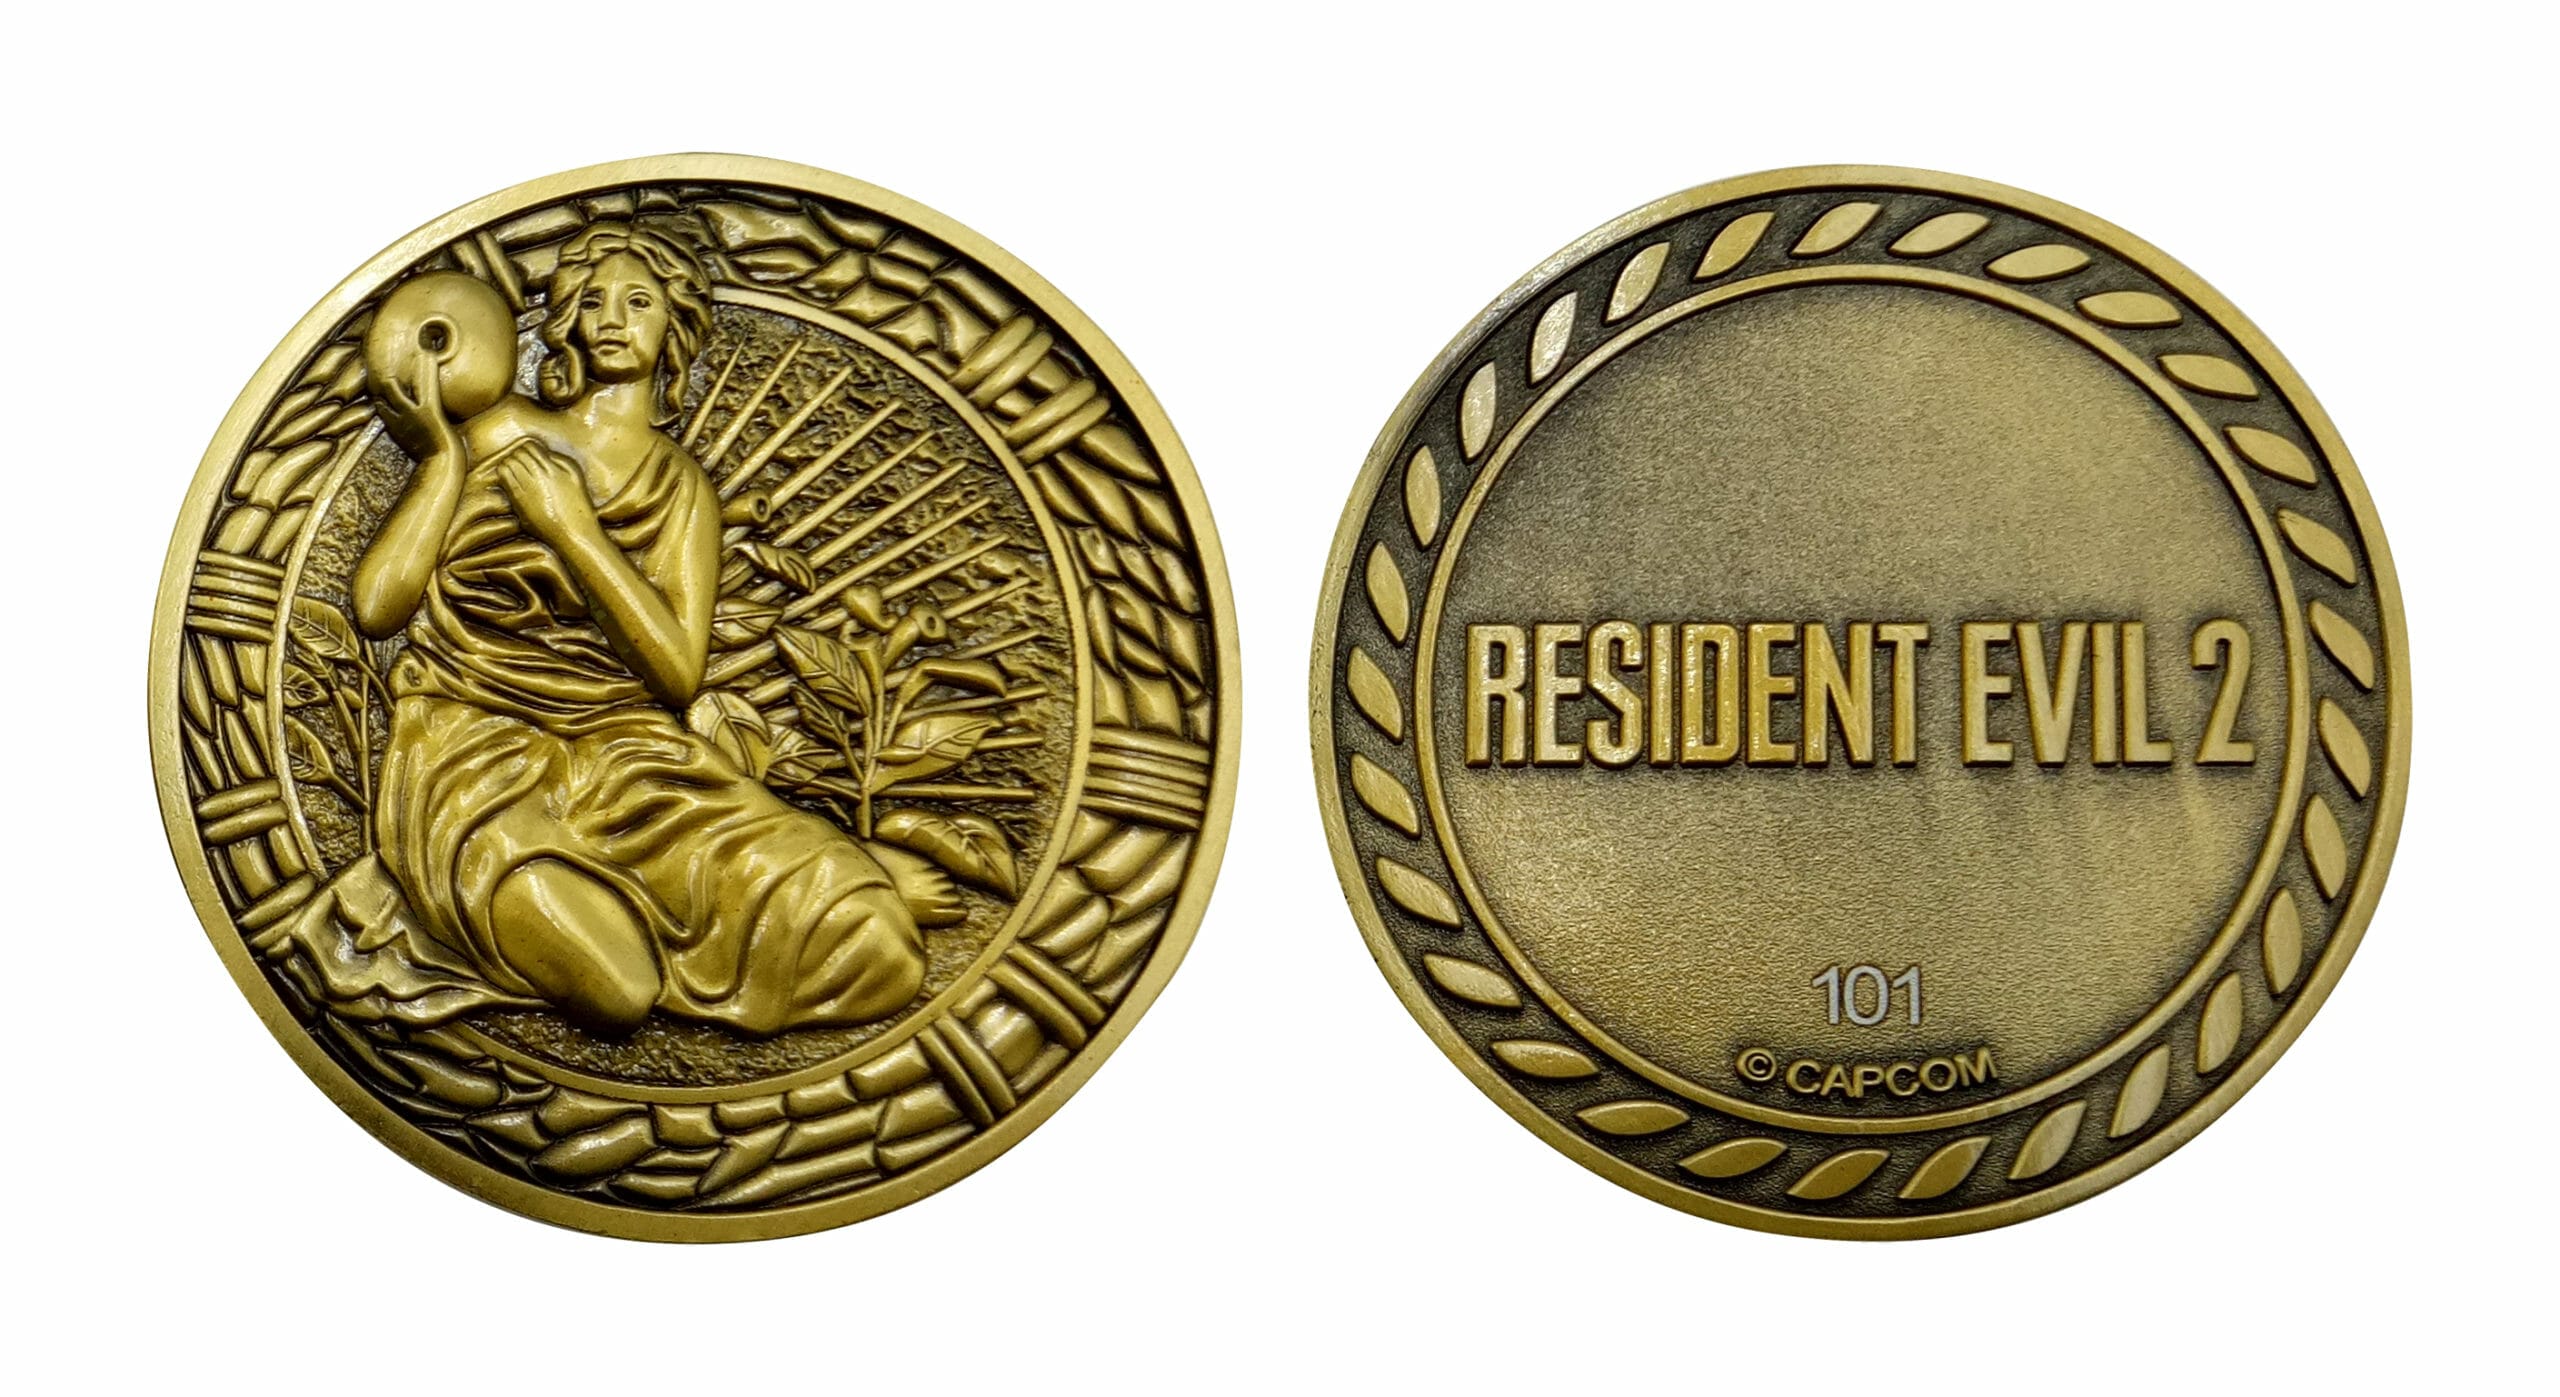 Resident Evil 2 Medallions - Maiden